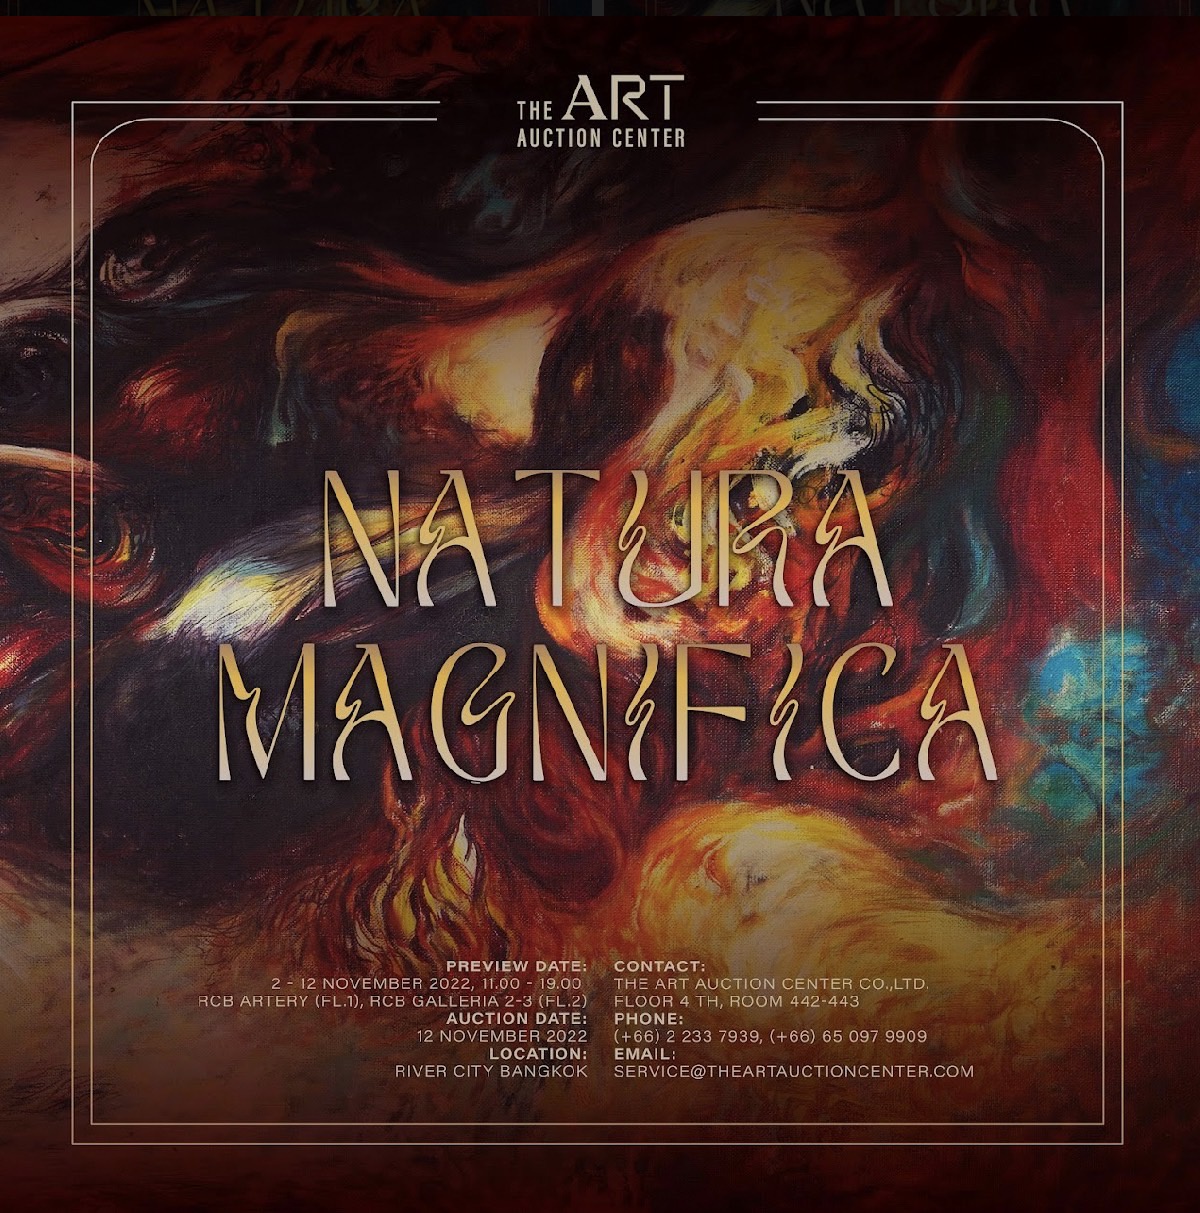 วงการศิลปะไทยคักคัก ดิ อาร์ต อ๊อคชั่น เซ็นเตอร์ (The Art Auction Center) เตรียมจัดประมูลผลงานศิลปะครั้งใหญ่แห่งปี ภายใต้ชื่อ NATURA